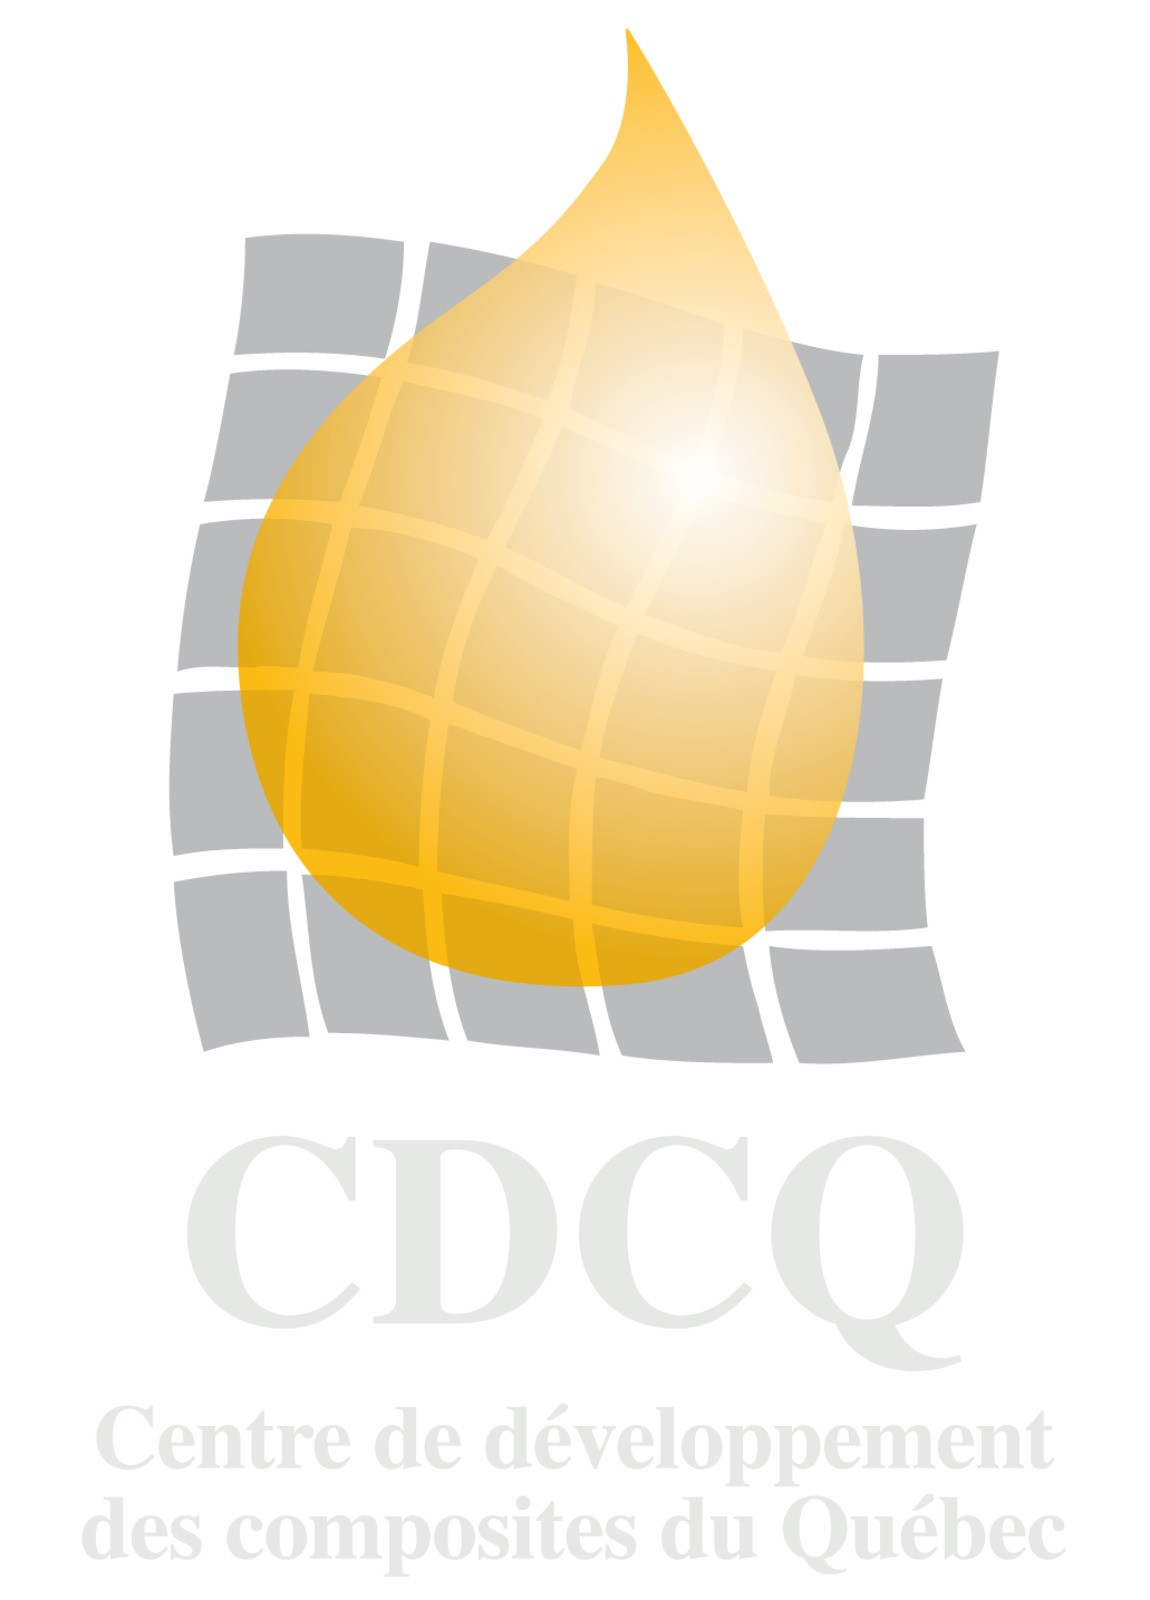 Centre de développement des composites du Québec - CDCQ